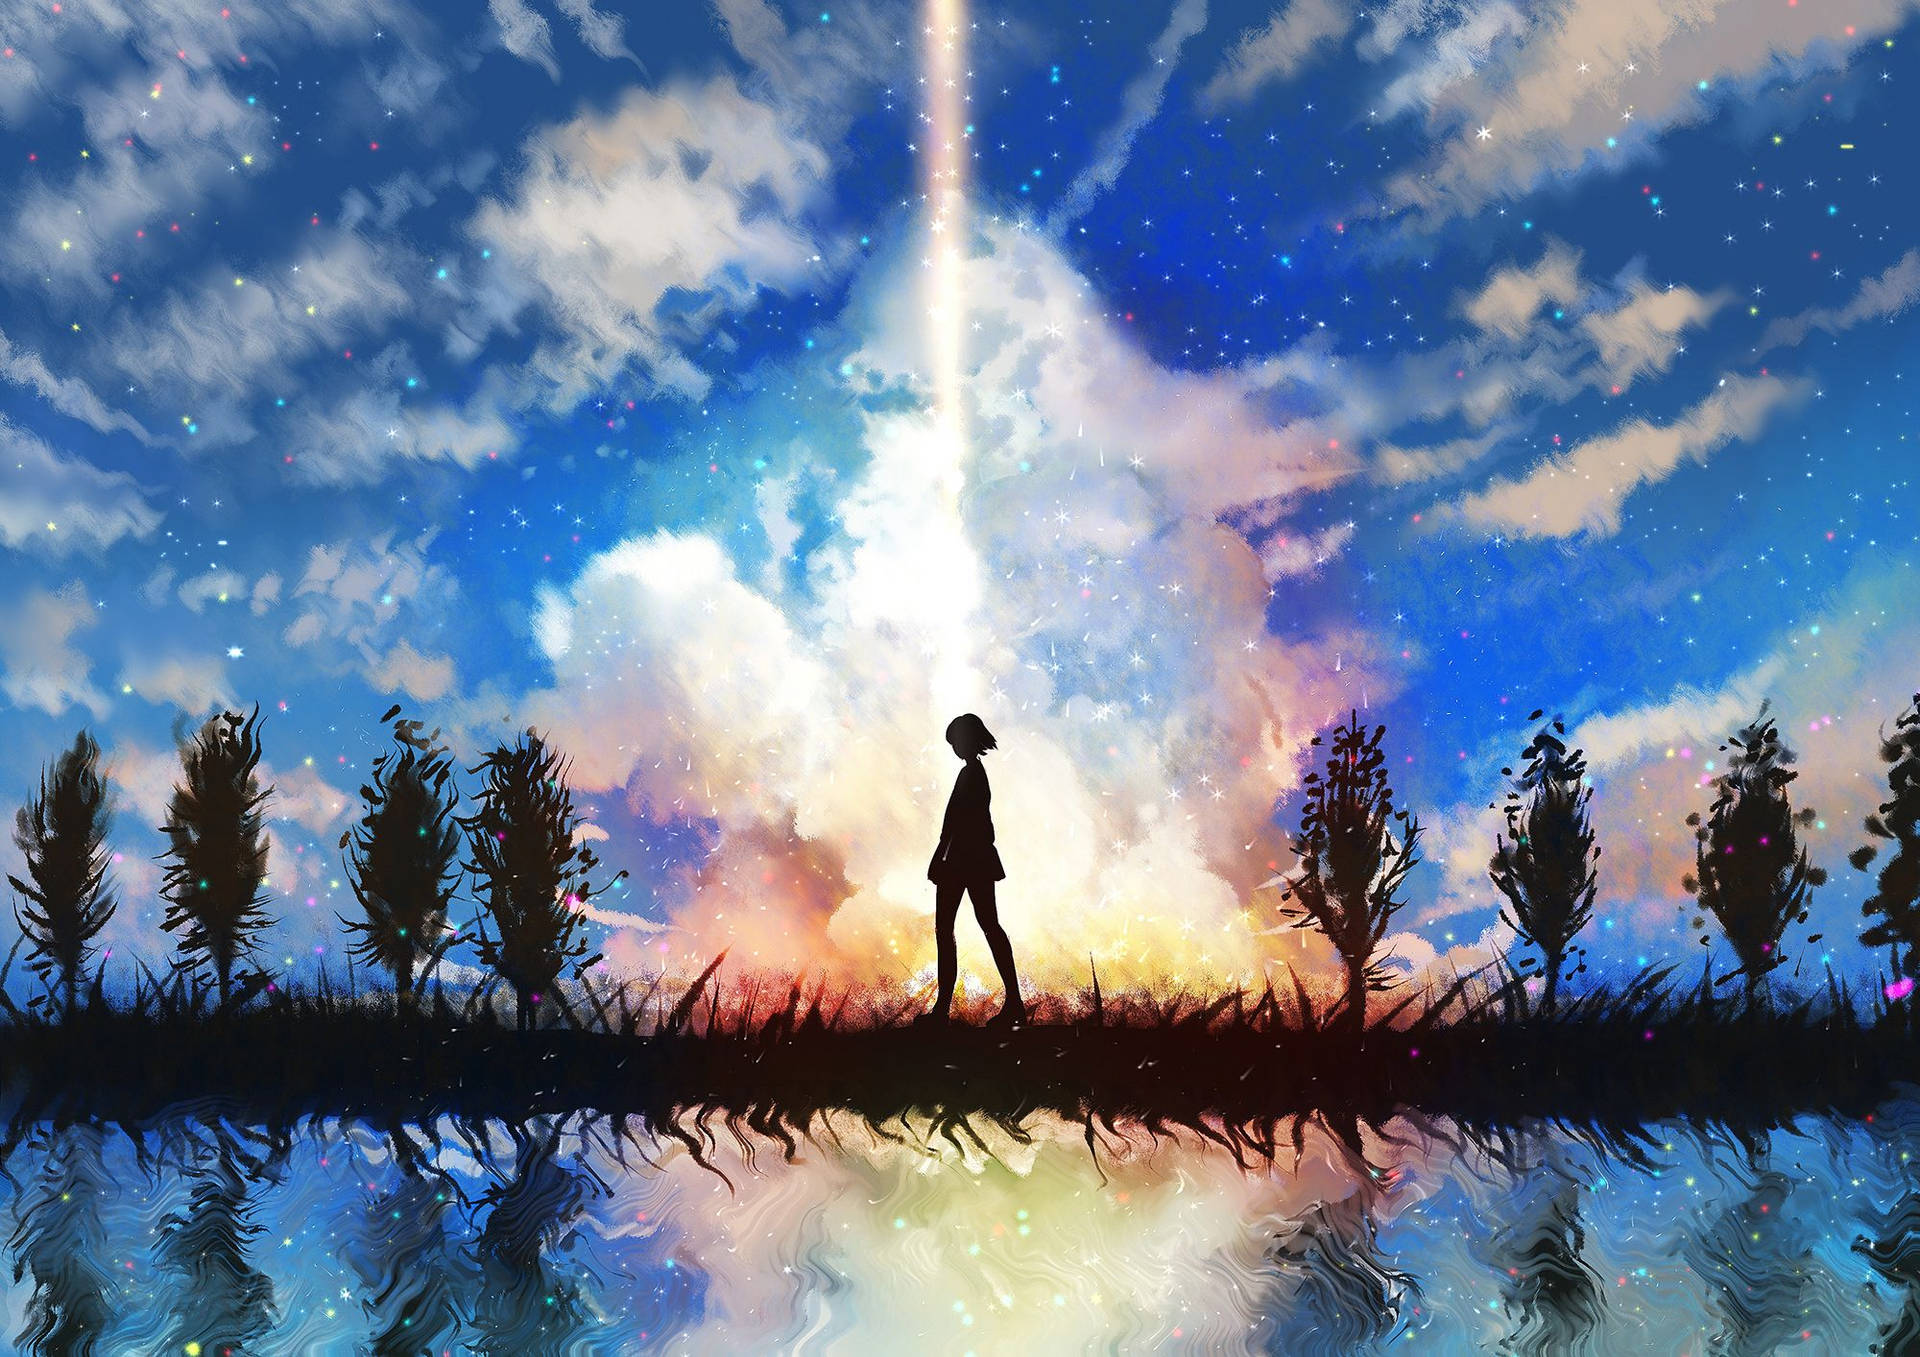 Anime Landscape Sky Of Stars